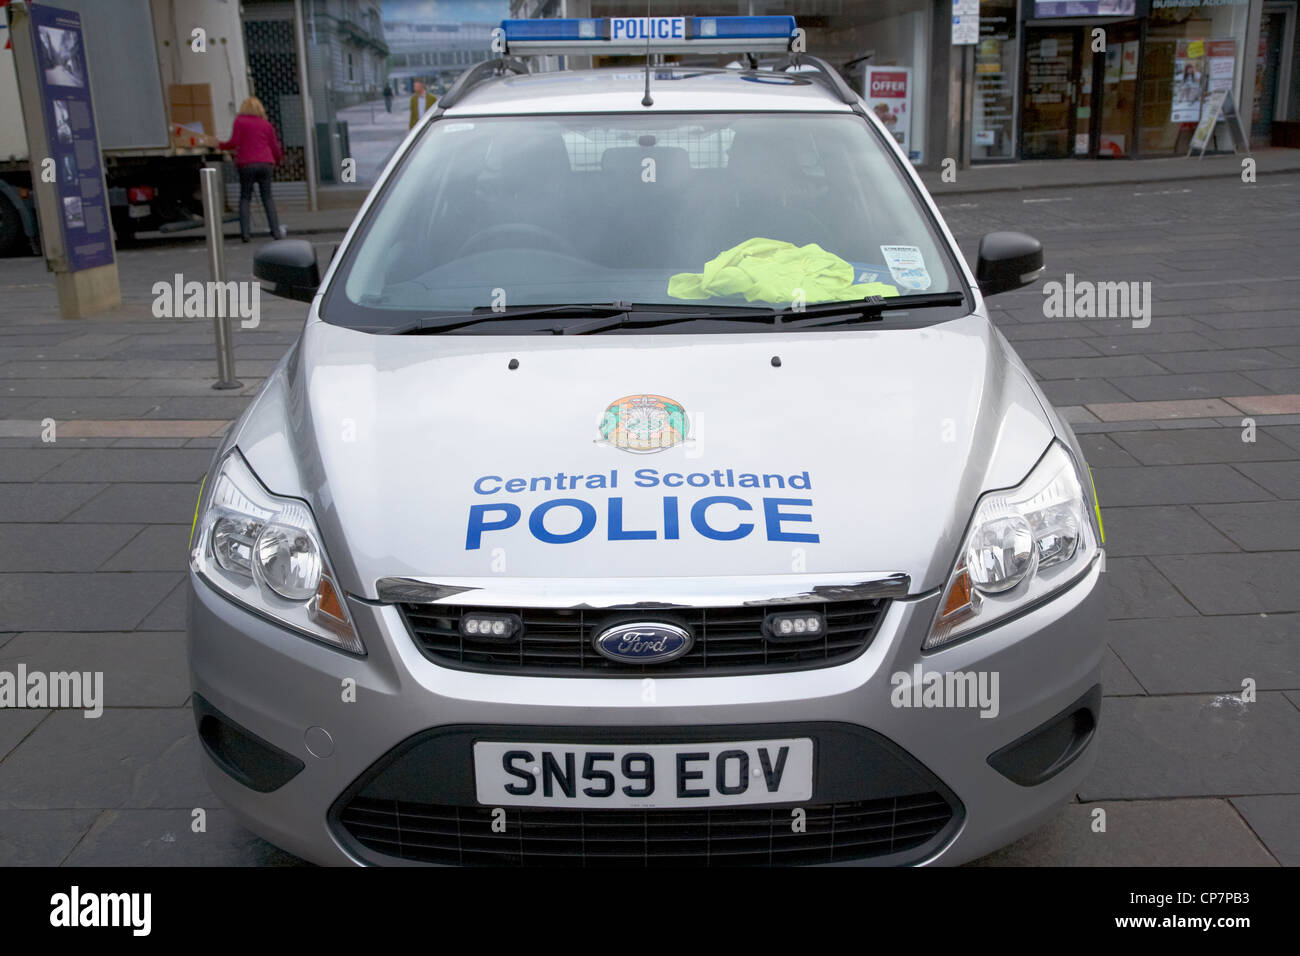 L'Ecosse centrale voiture de patrouille de police stirling Ecosse UK Banque D'Images